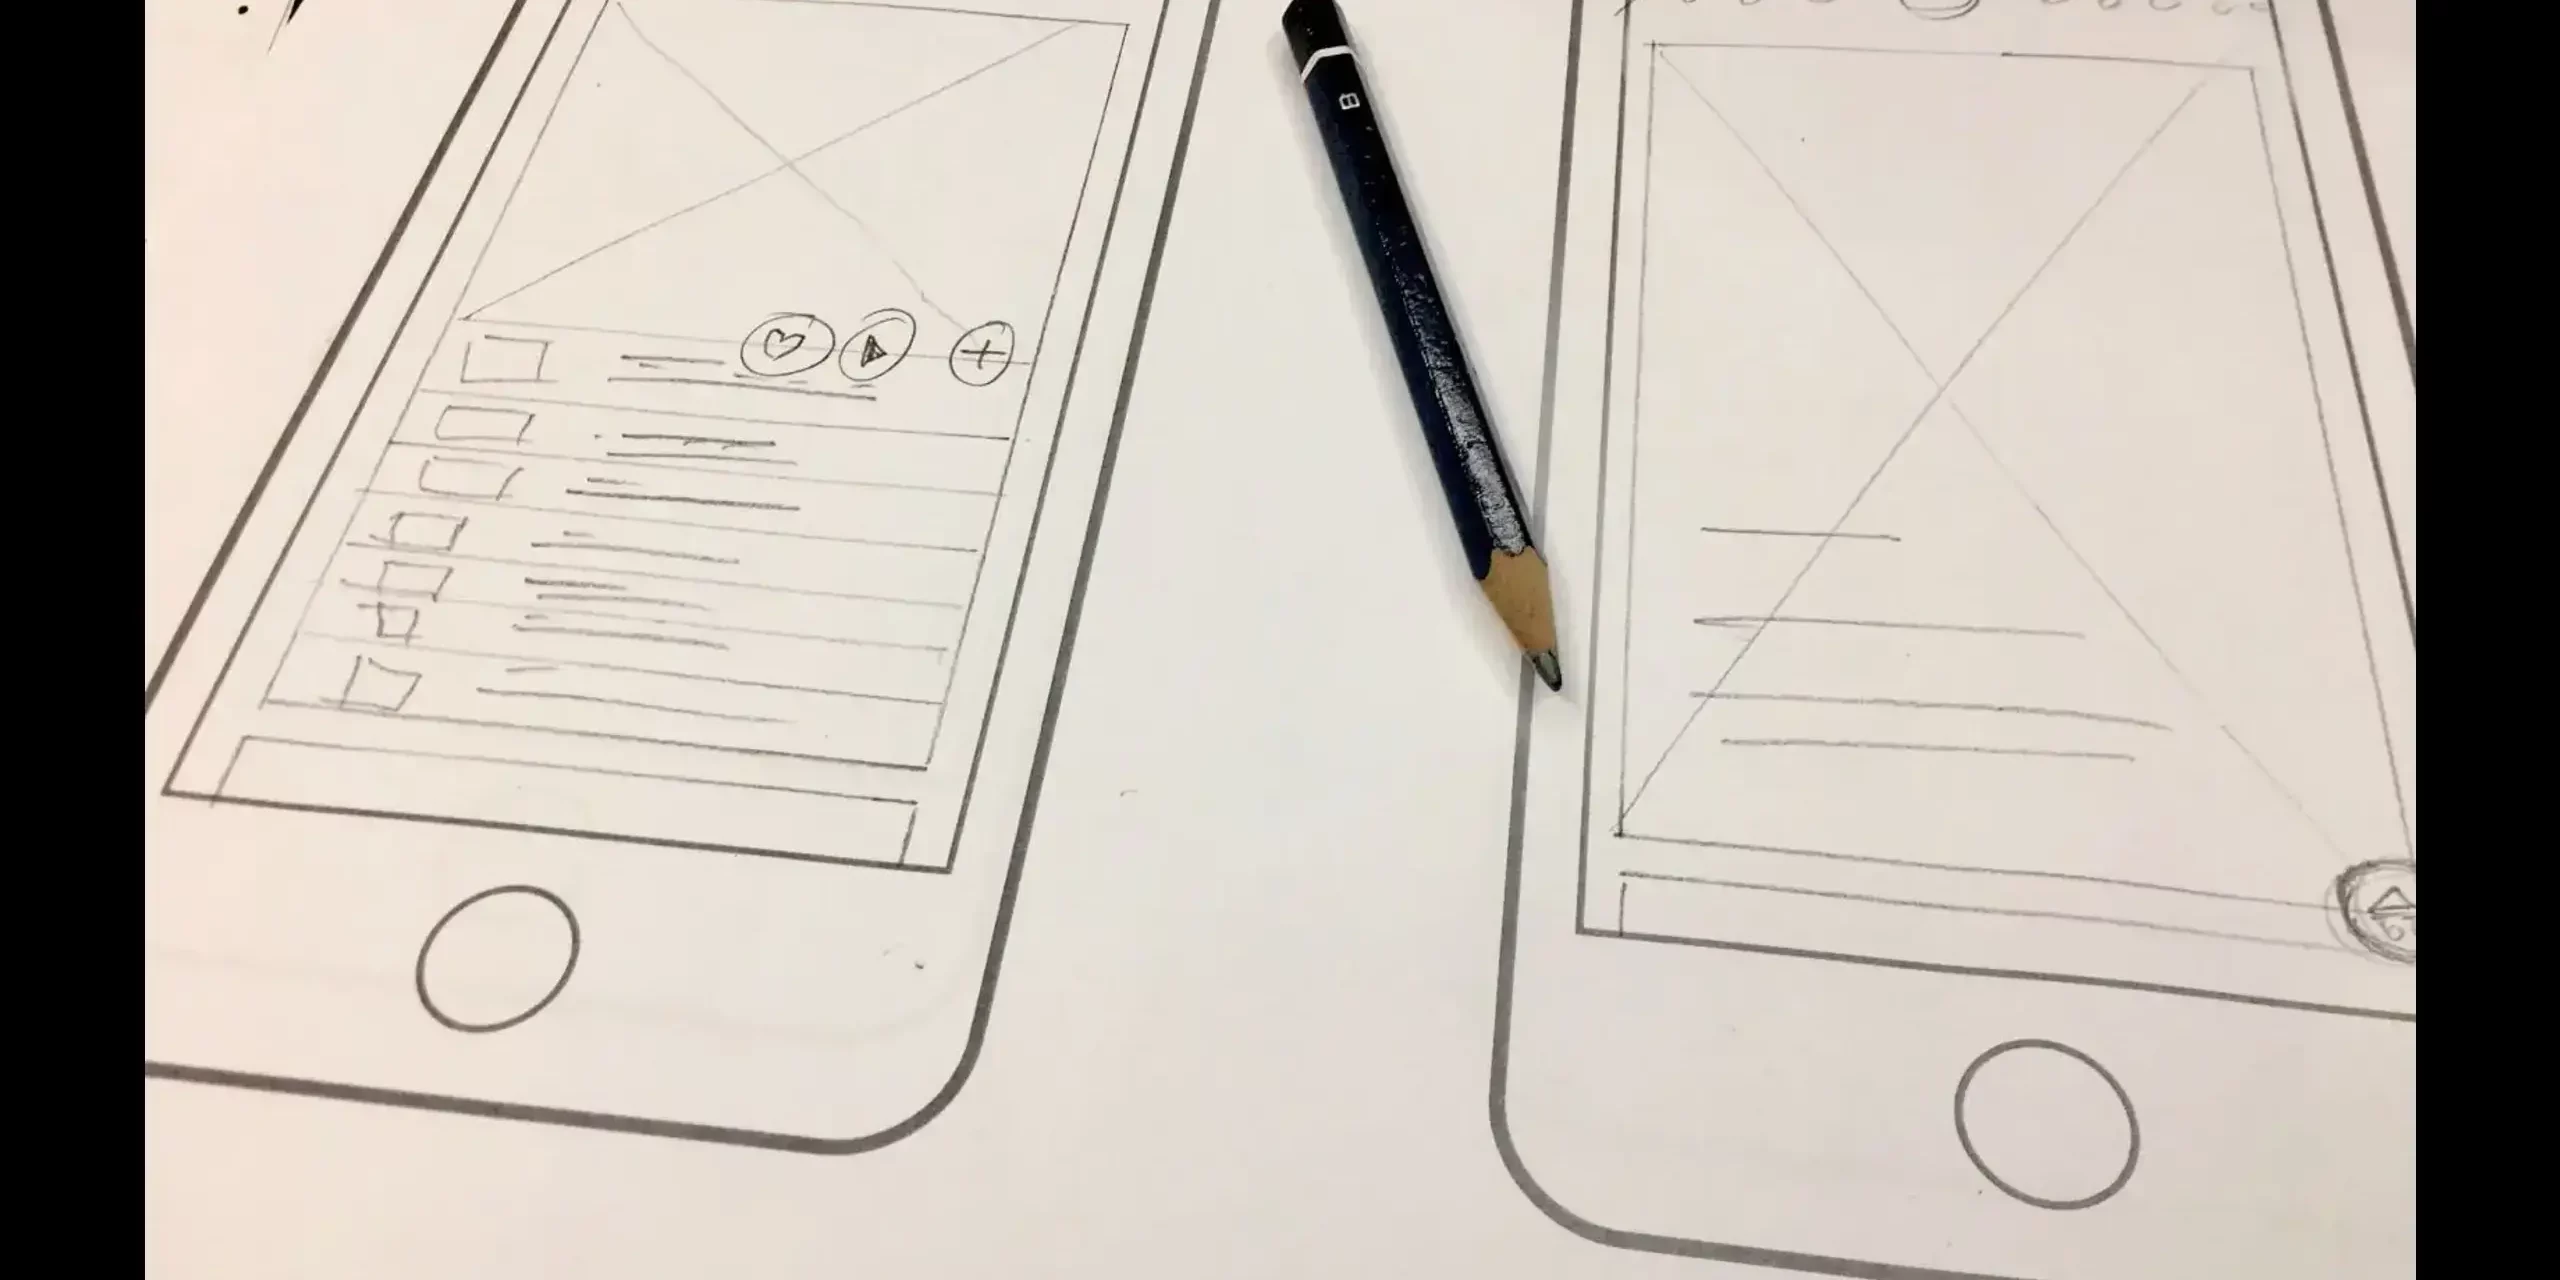 A sketch of a website design